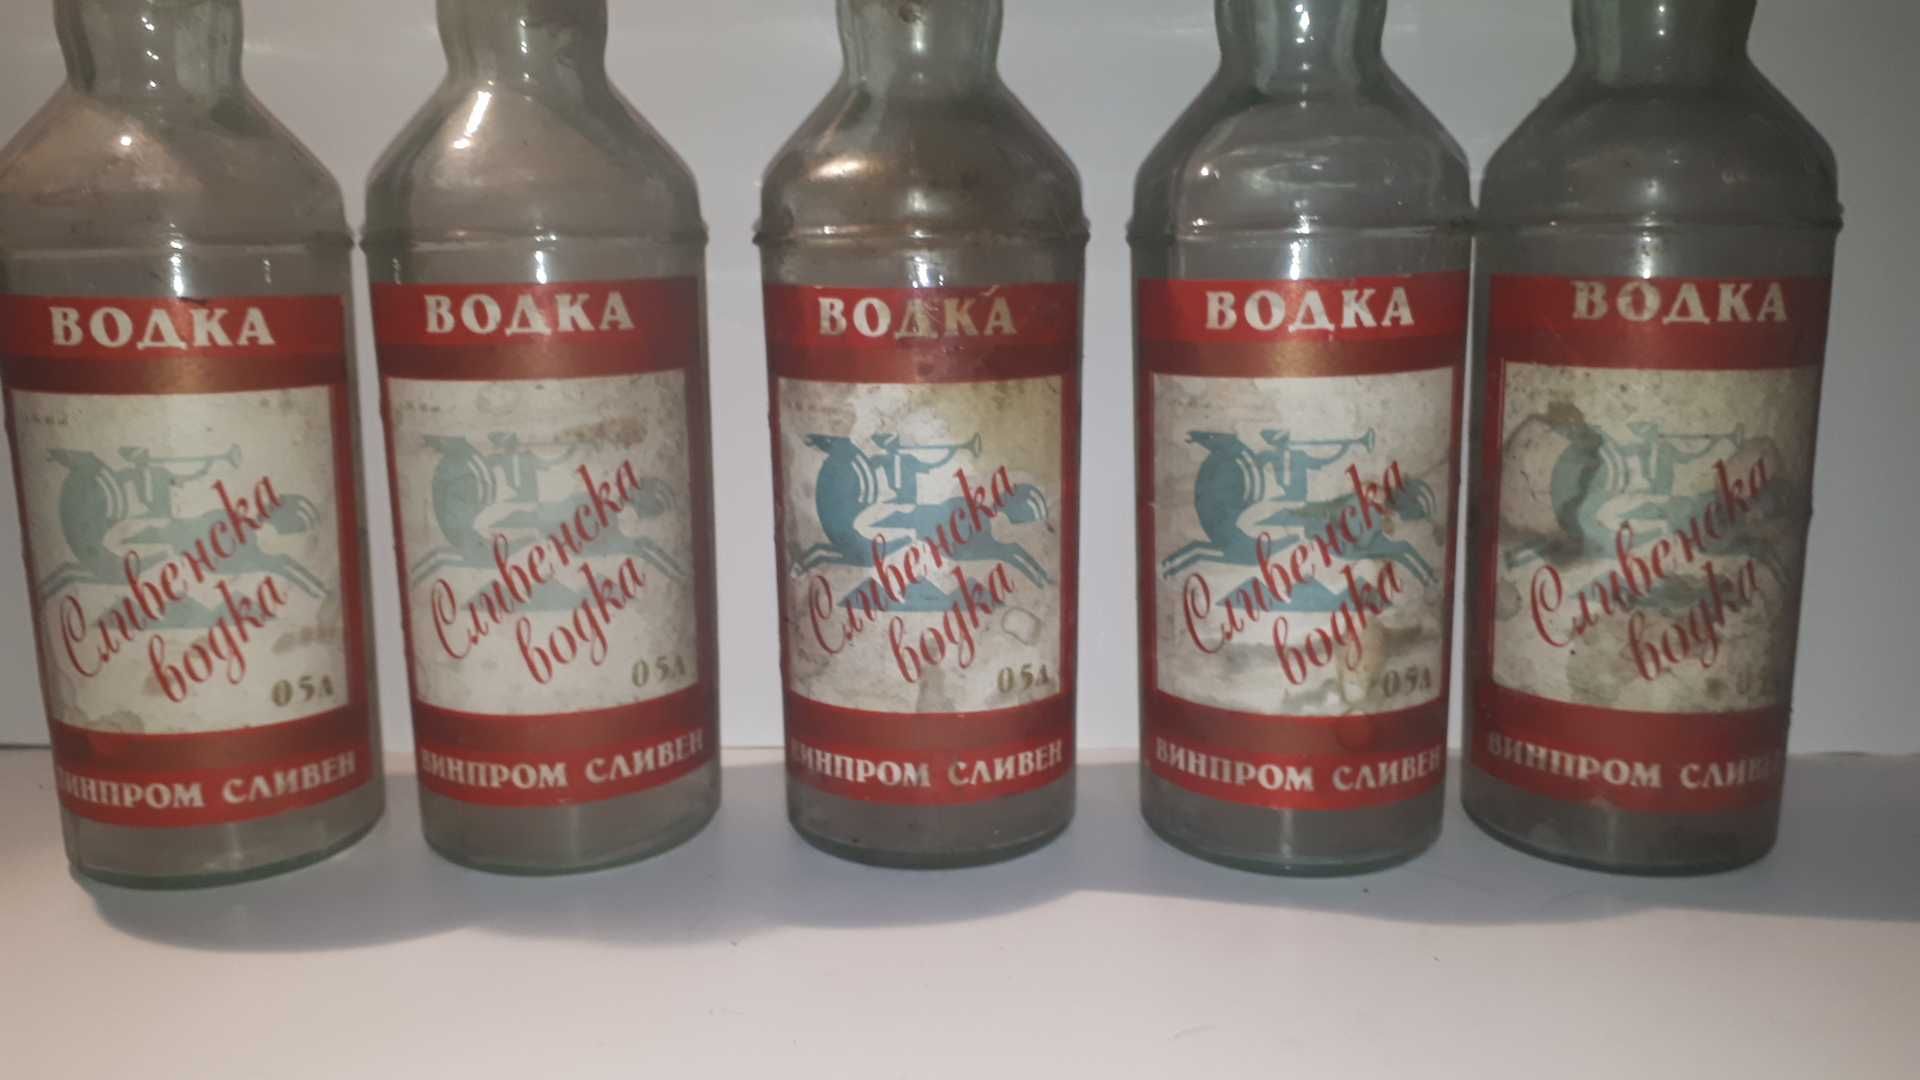 "Сливенска водка" - 9 стари празни бутилки